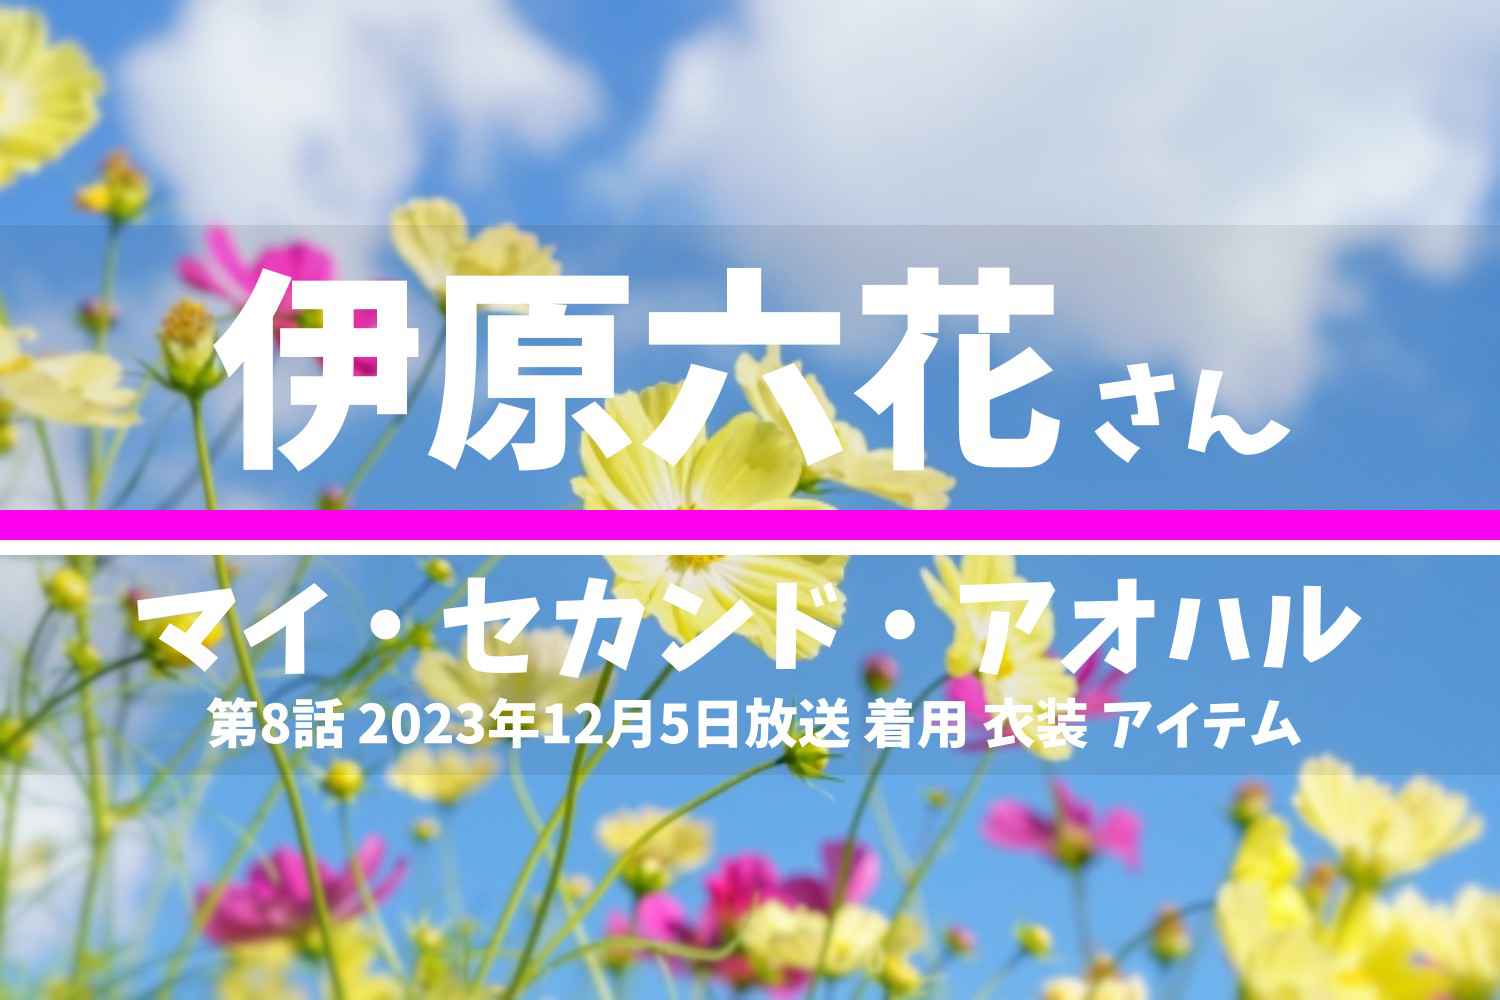 マイ・セカンド・アオハル 伊原六花さん テレビドラマ 衣装 2023年12月5日放送